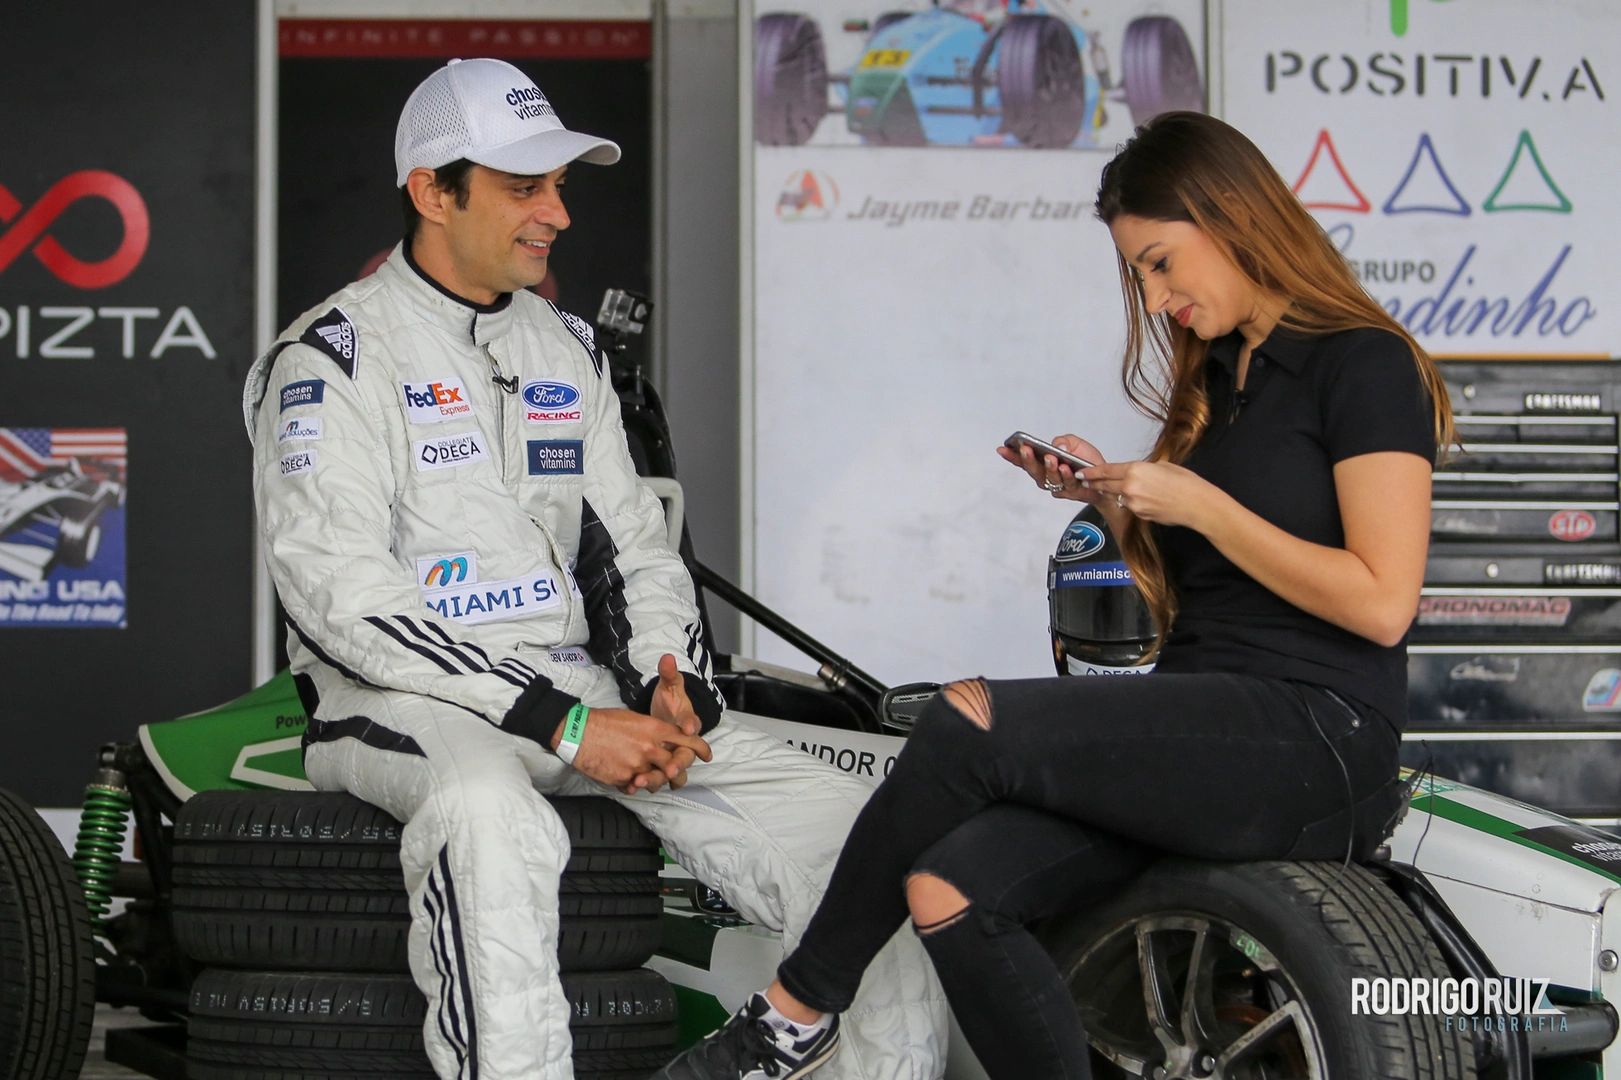 Deni Sandor Formula Ford interview band 3 #DeniSandor formula ford 3